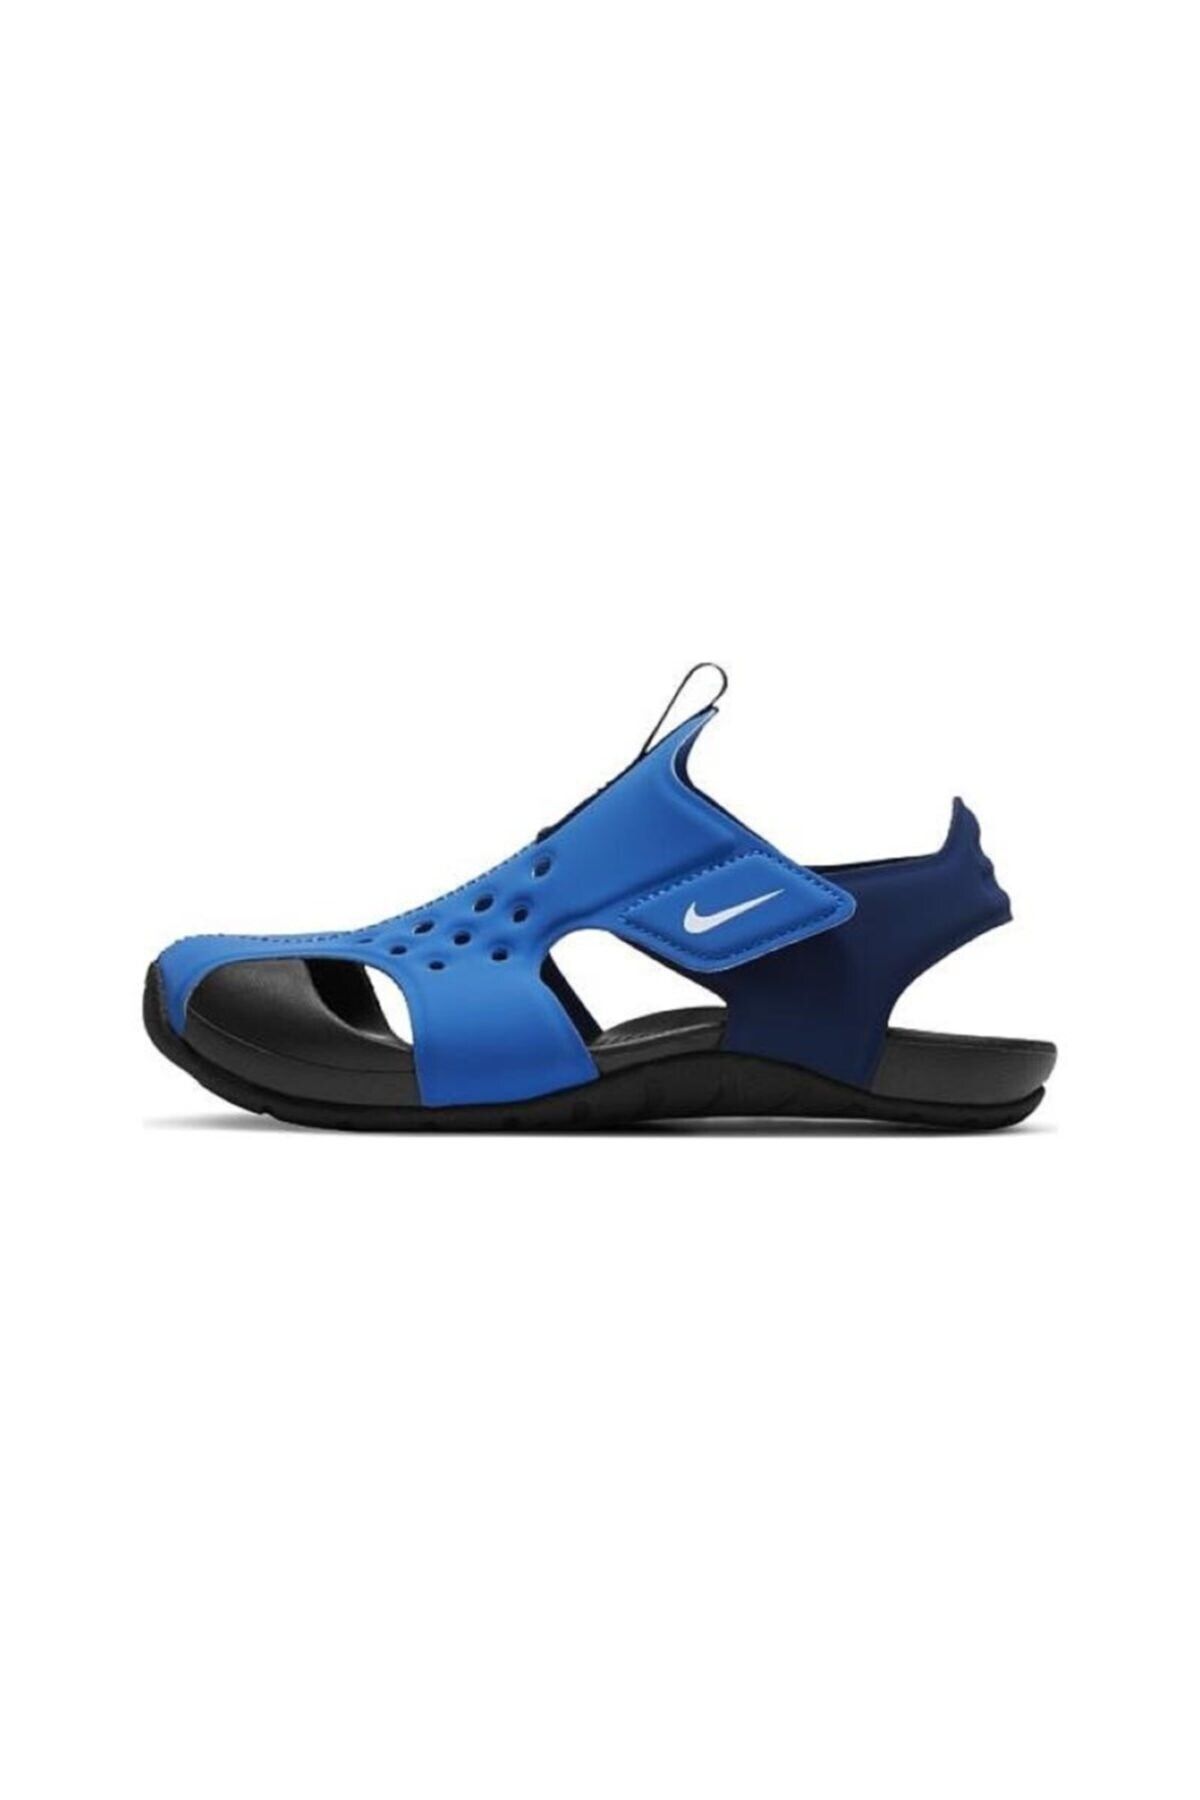 Nike Sunray Protect 2 (PS) Çocuk Sandalet Ayakkabı 943826-403-mavi